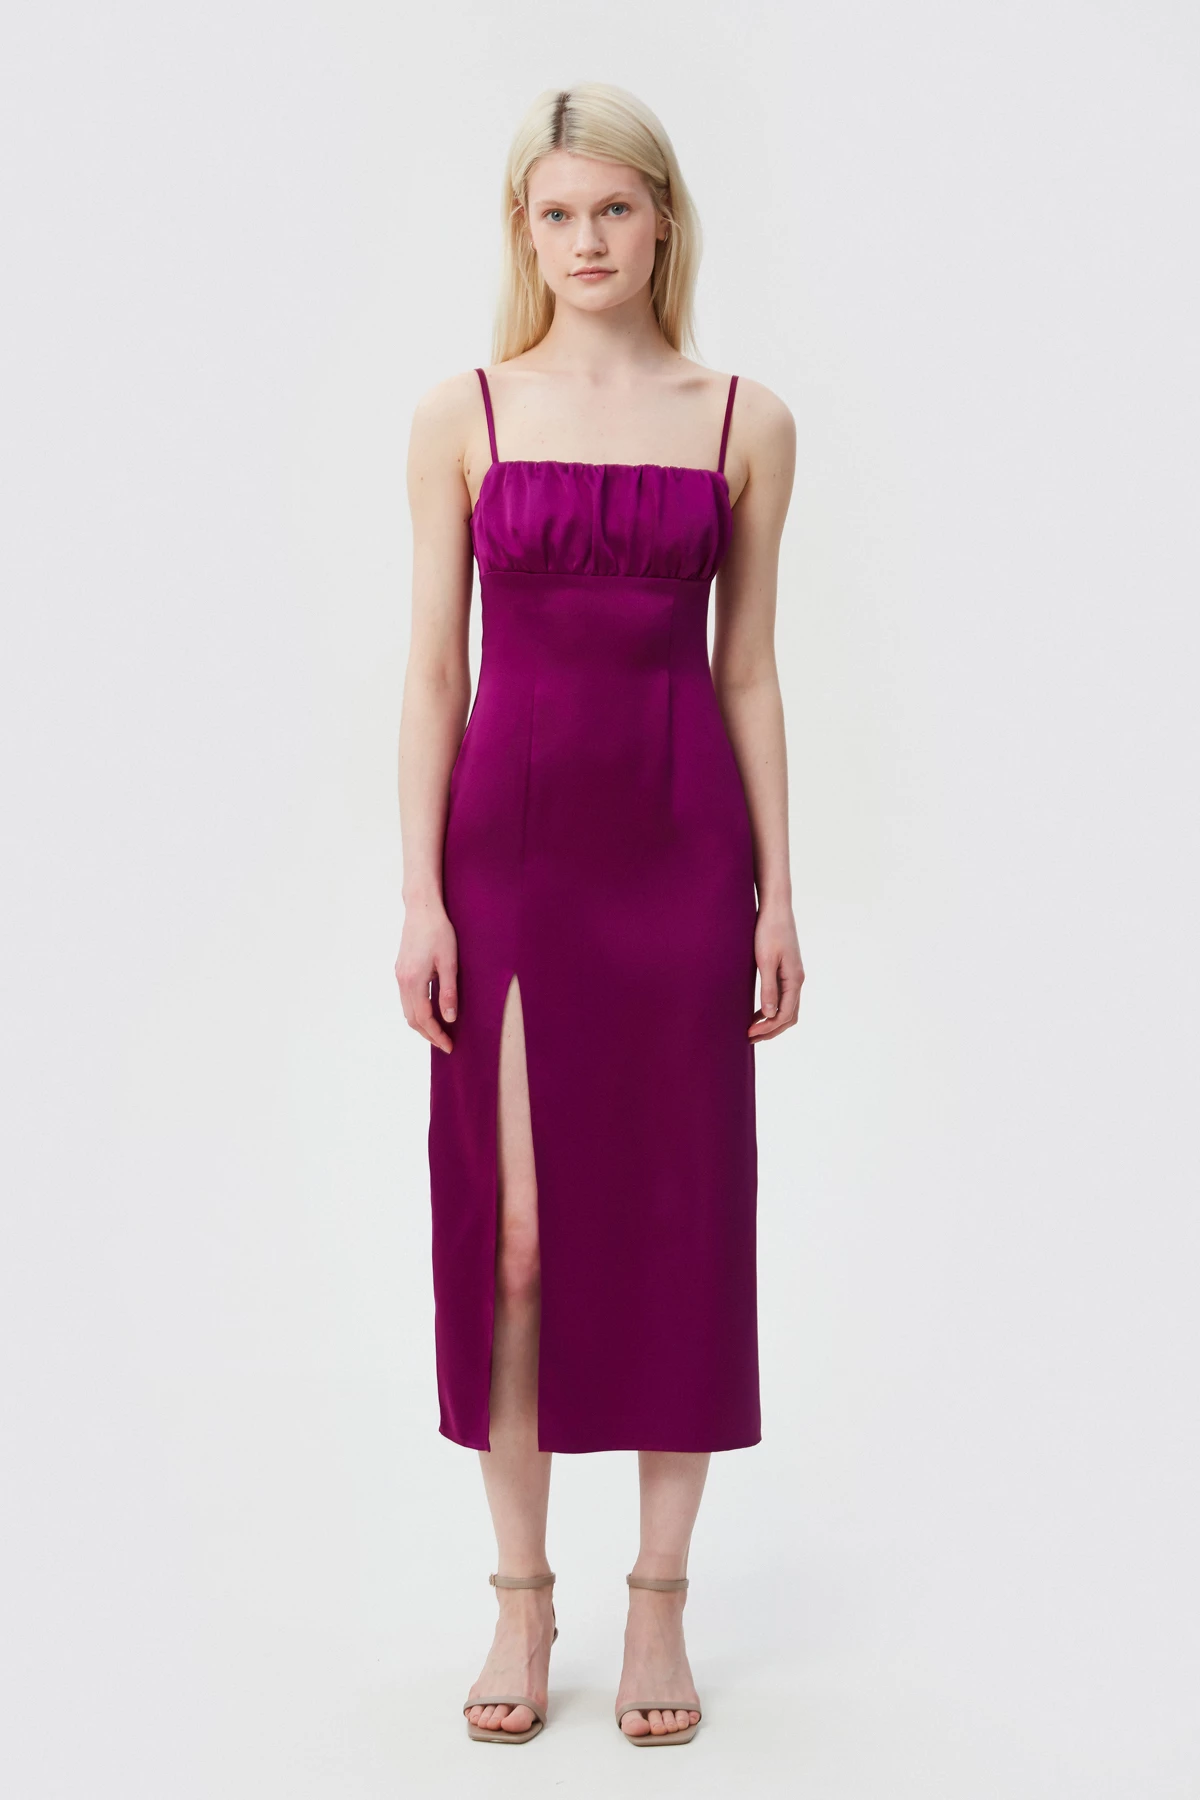 Сукня-комбінація довге міді кольору фуксія з сатину, фото 1